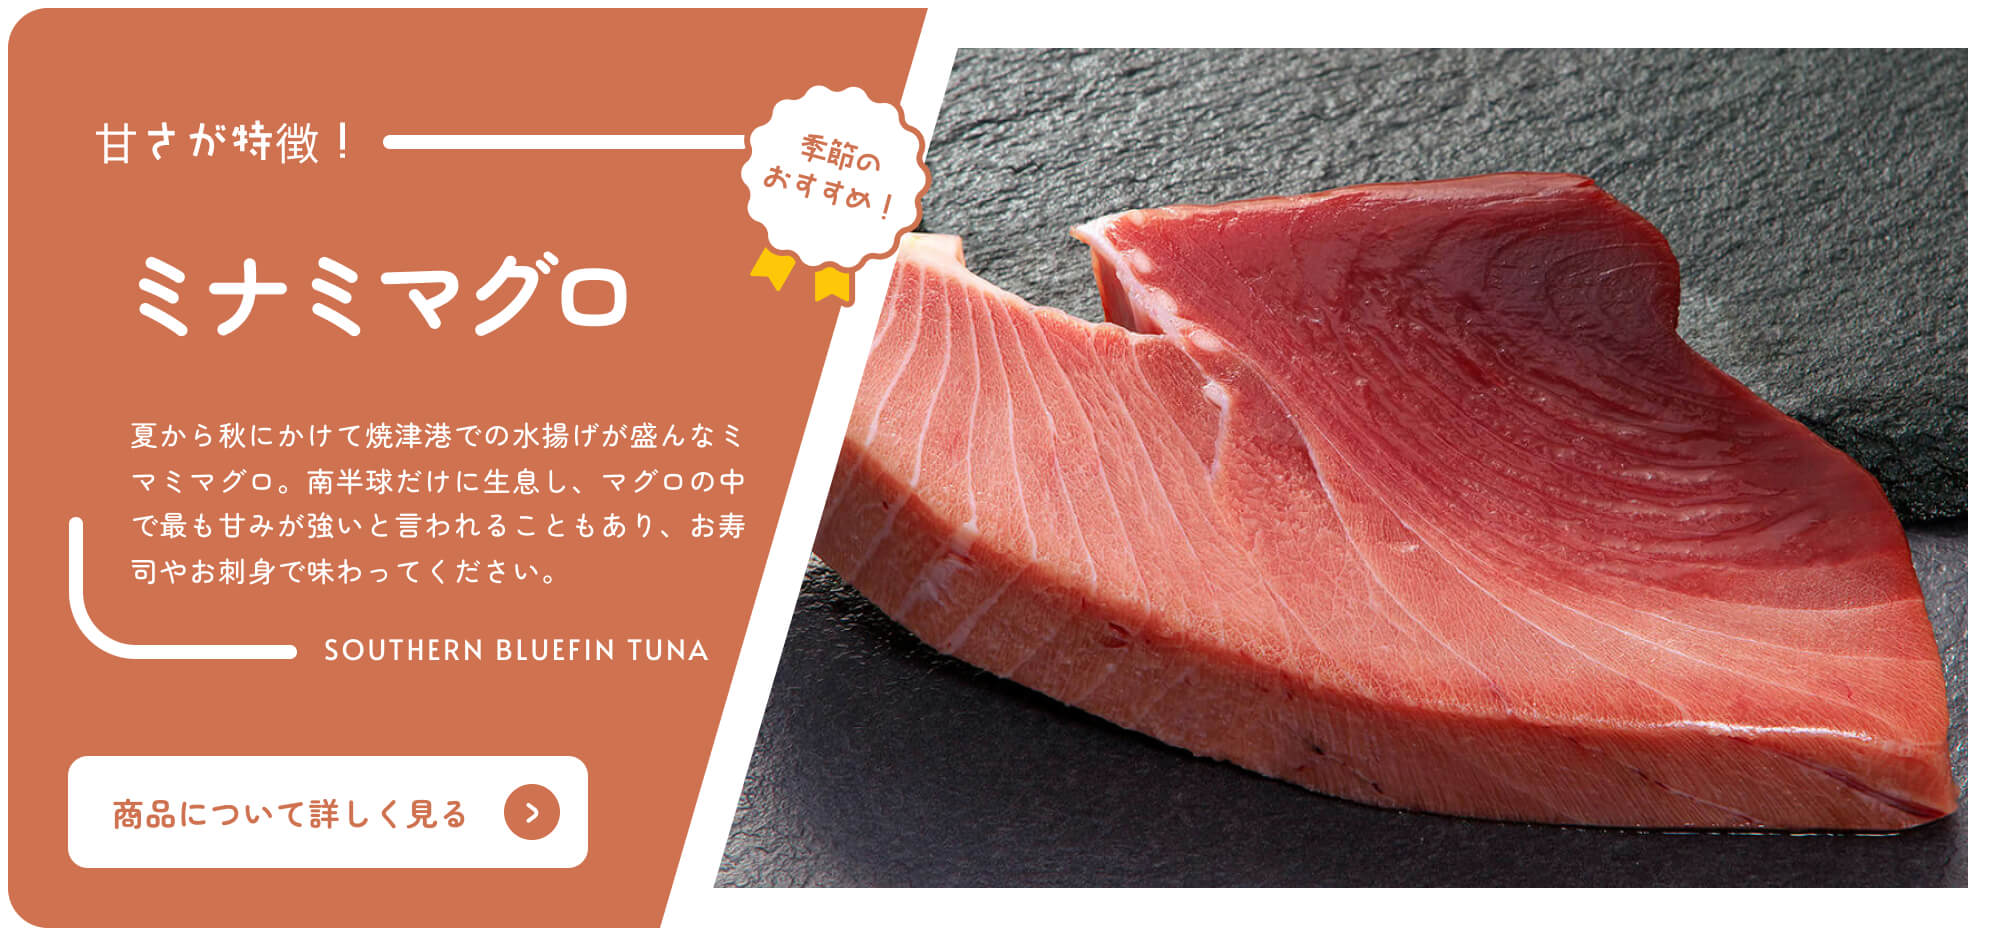 Acheter le catalogue en ligne de Shizuoka Saisonnier Recommandé Thon rouge du Sud